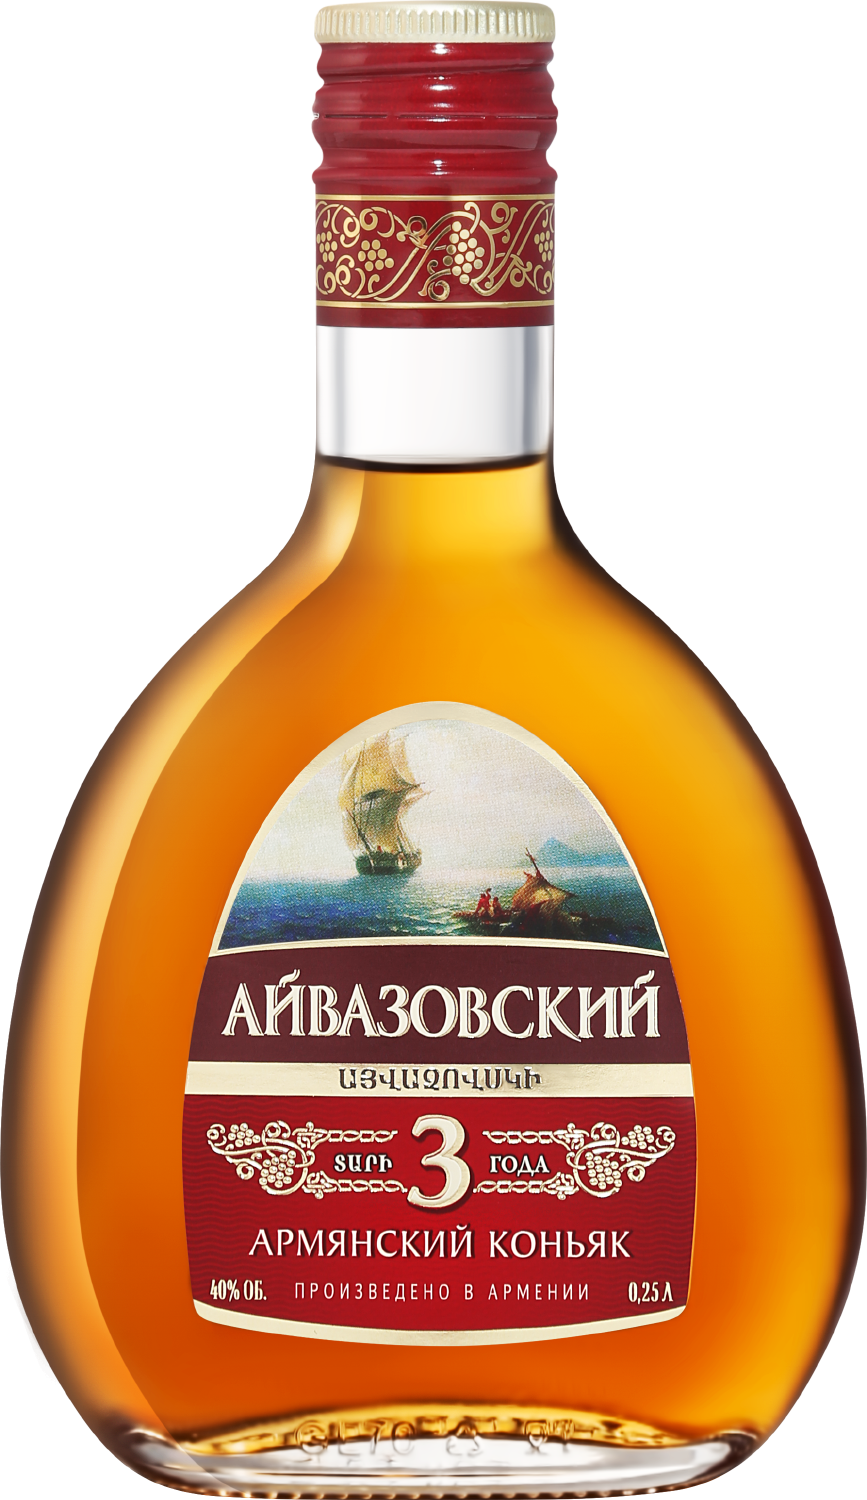 aivazovsky armenian brandy 5 y o Aivazovsky Armenian Brandy 3 Y.O.